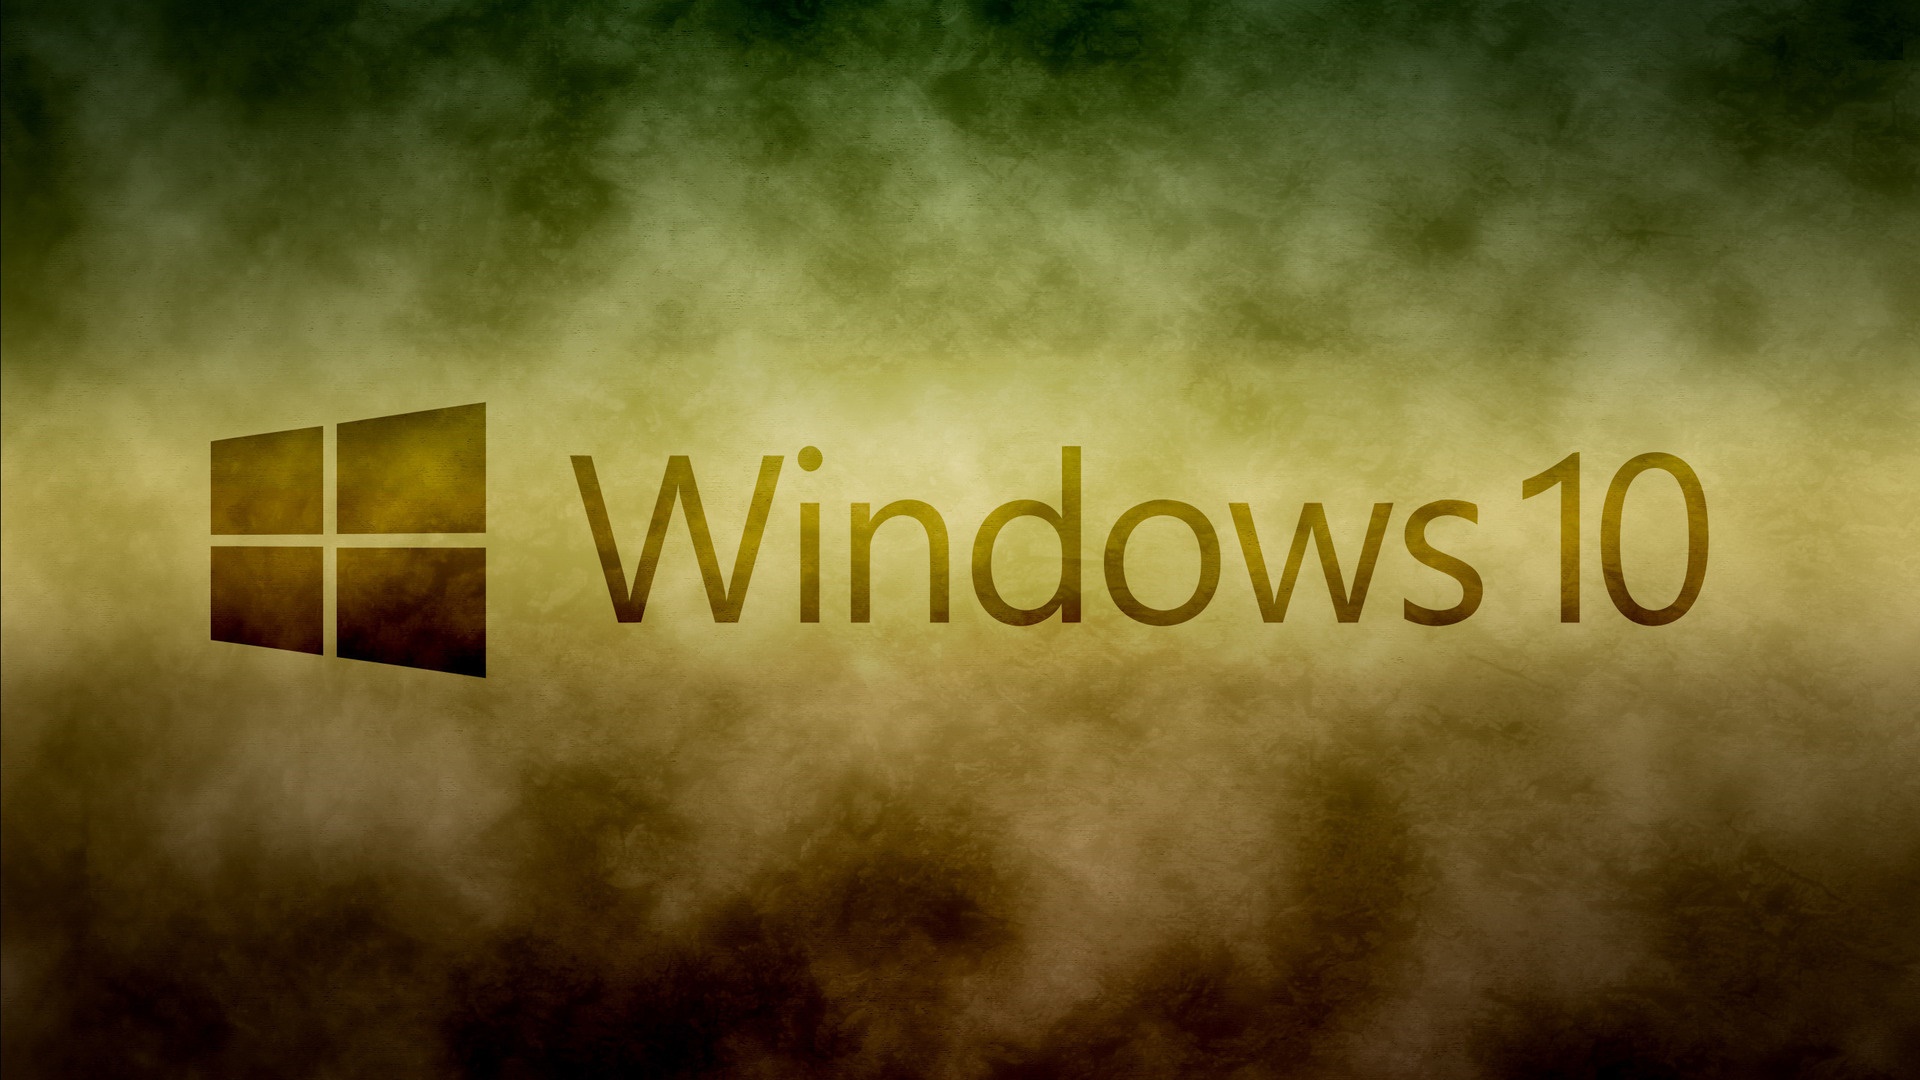 40 Gambar Download Wallpaper Hd Laptop Windows 10 terbaru 2020